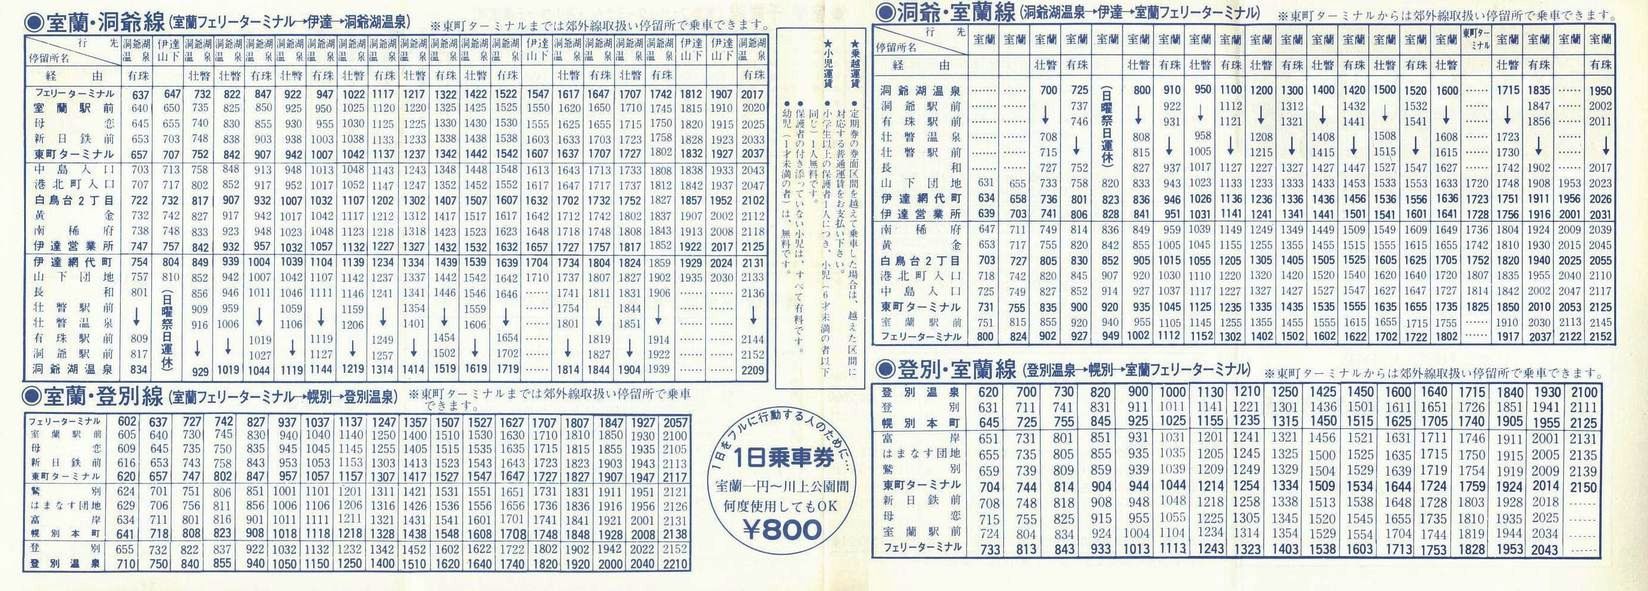 1987-04-01改正_道南バス_室蘭版郊外線時刻表裏面